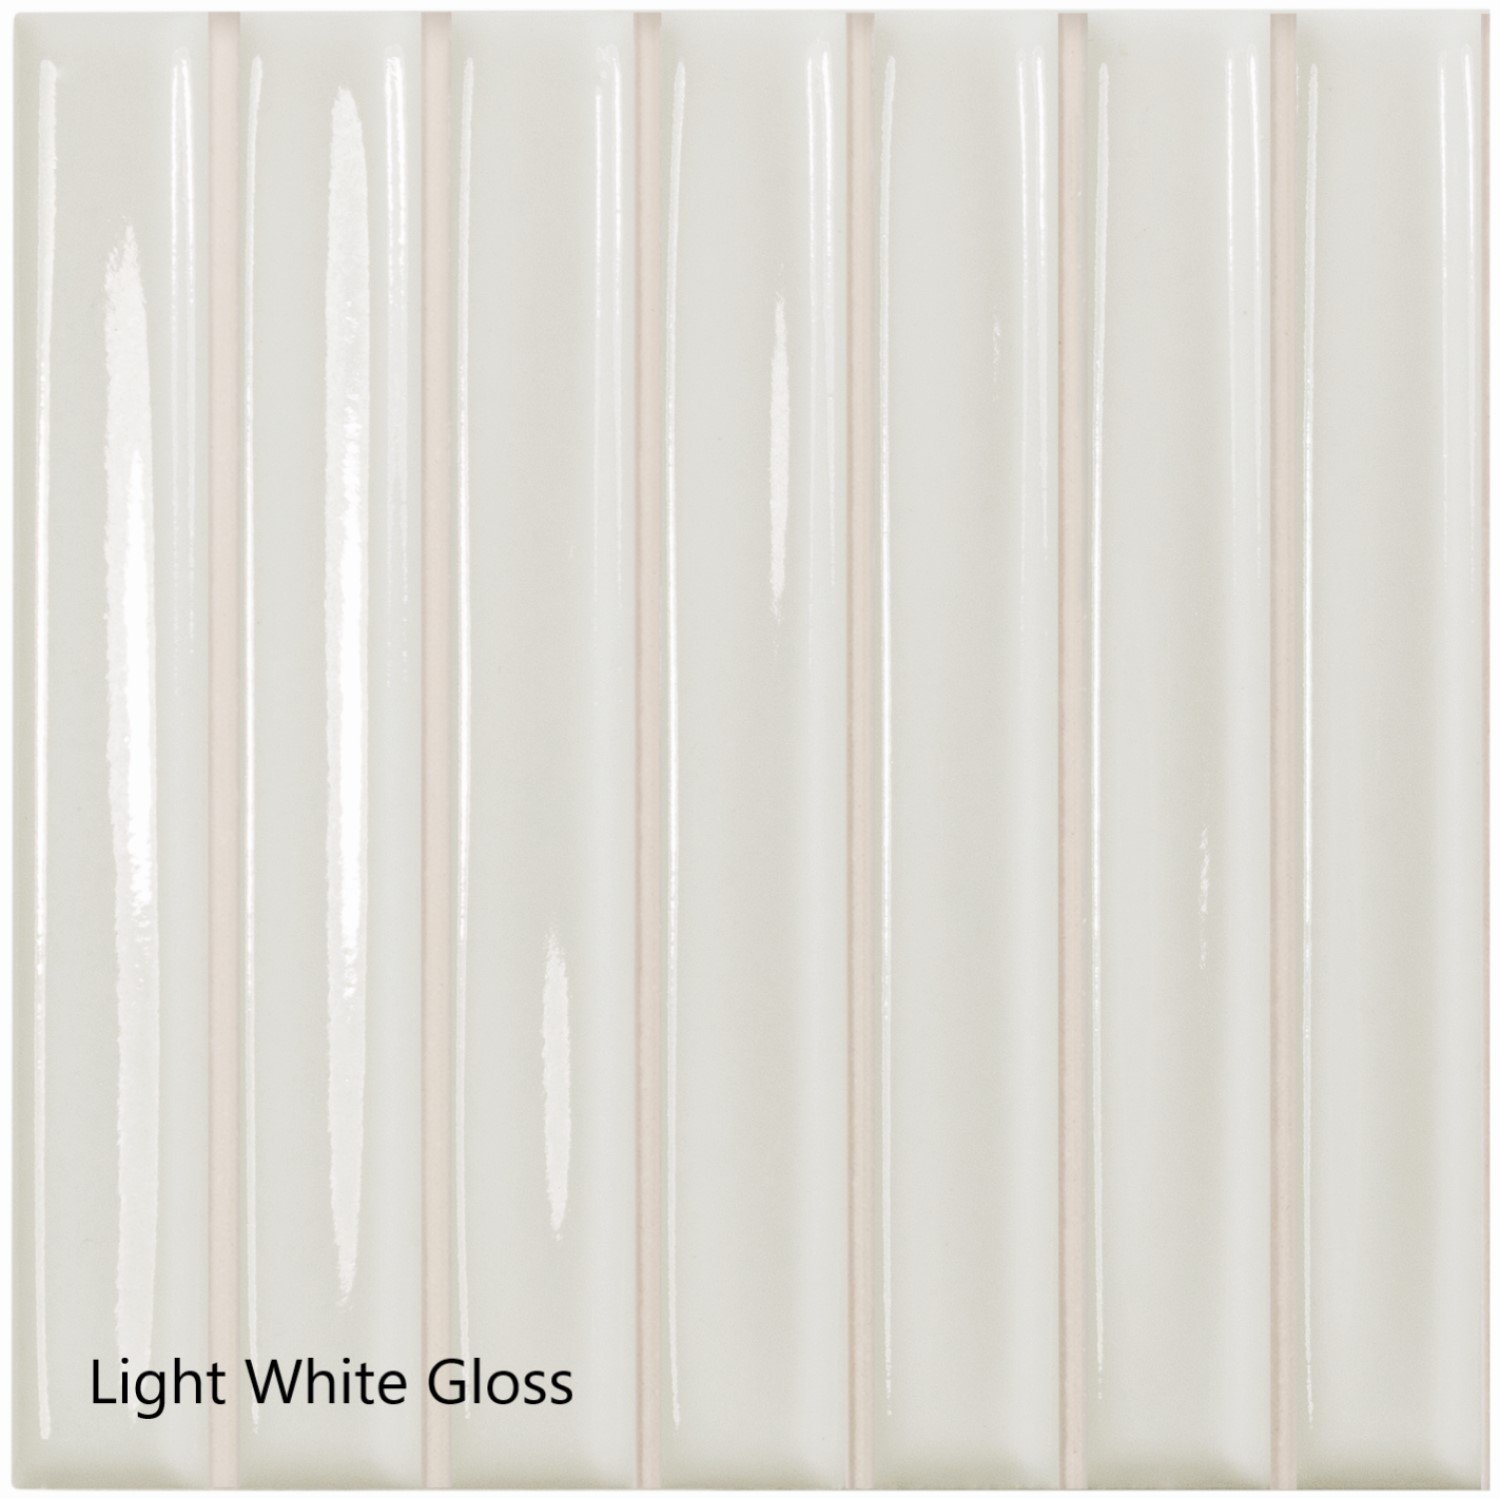 Light White Gloss.jpg